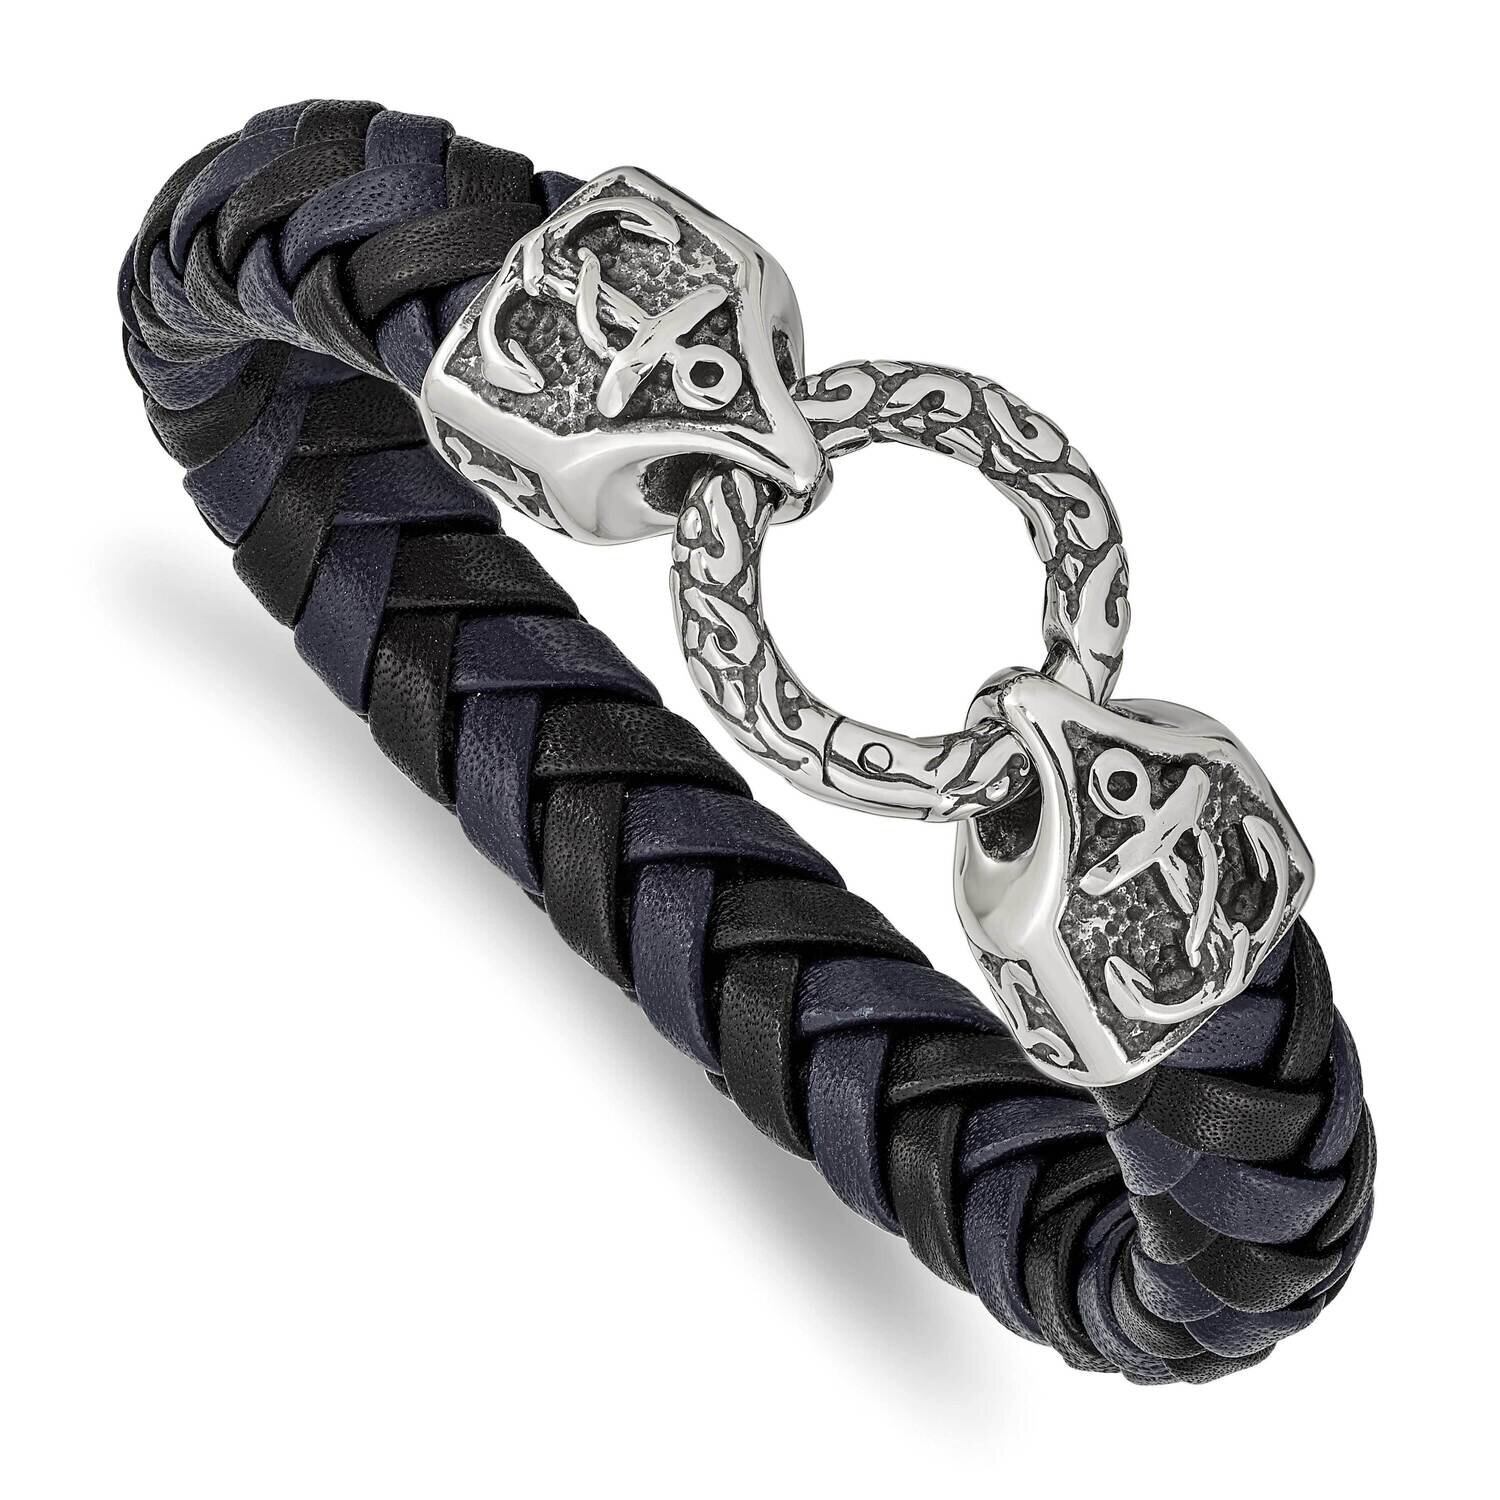 Polished Black Blue Leather 8.25 Inch Bracelet Stainless Steel Antiqued SRB2456-8.25